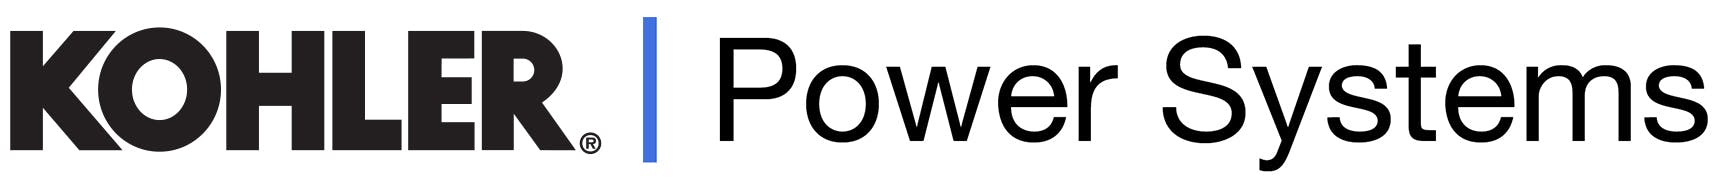 Kohler powers systems logo